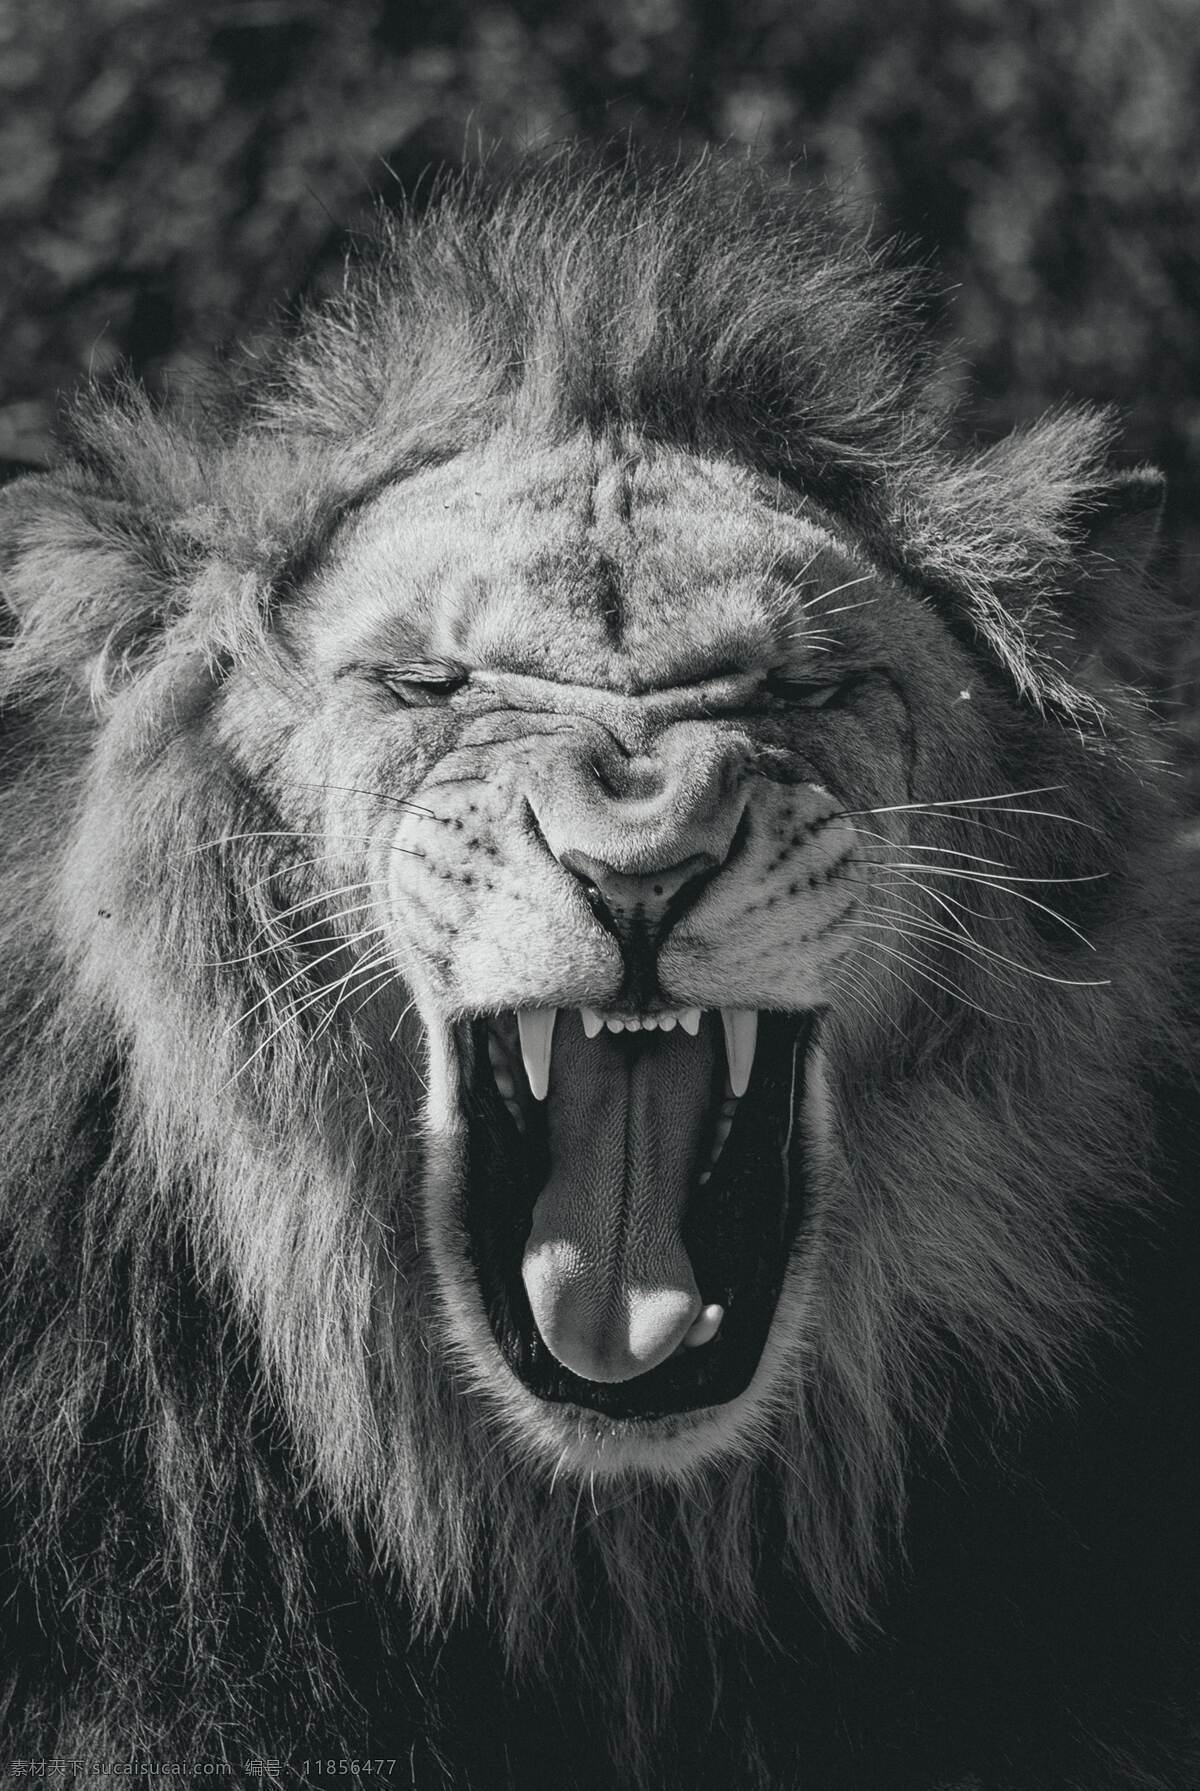 狮子怒吼 狮子 雄狮 狮子黑白照片 黑白照片 狮吼 草原之王 生物世界 野生动物